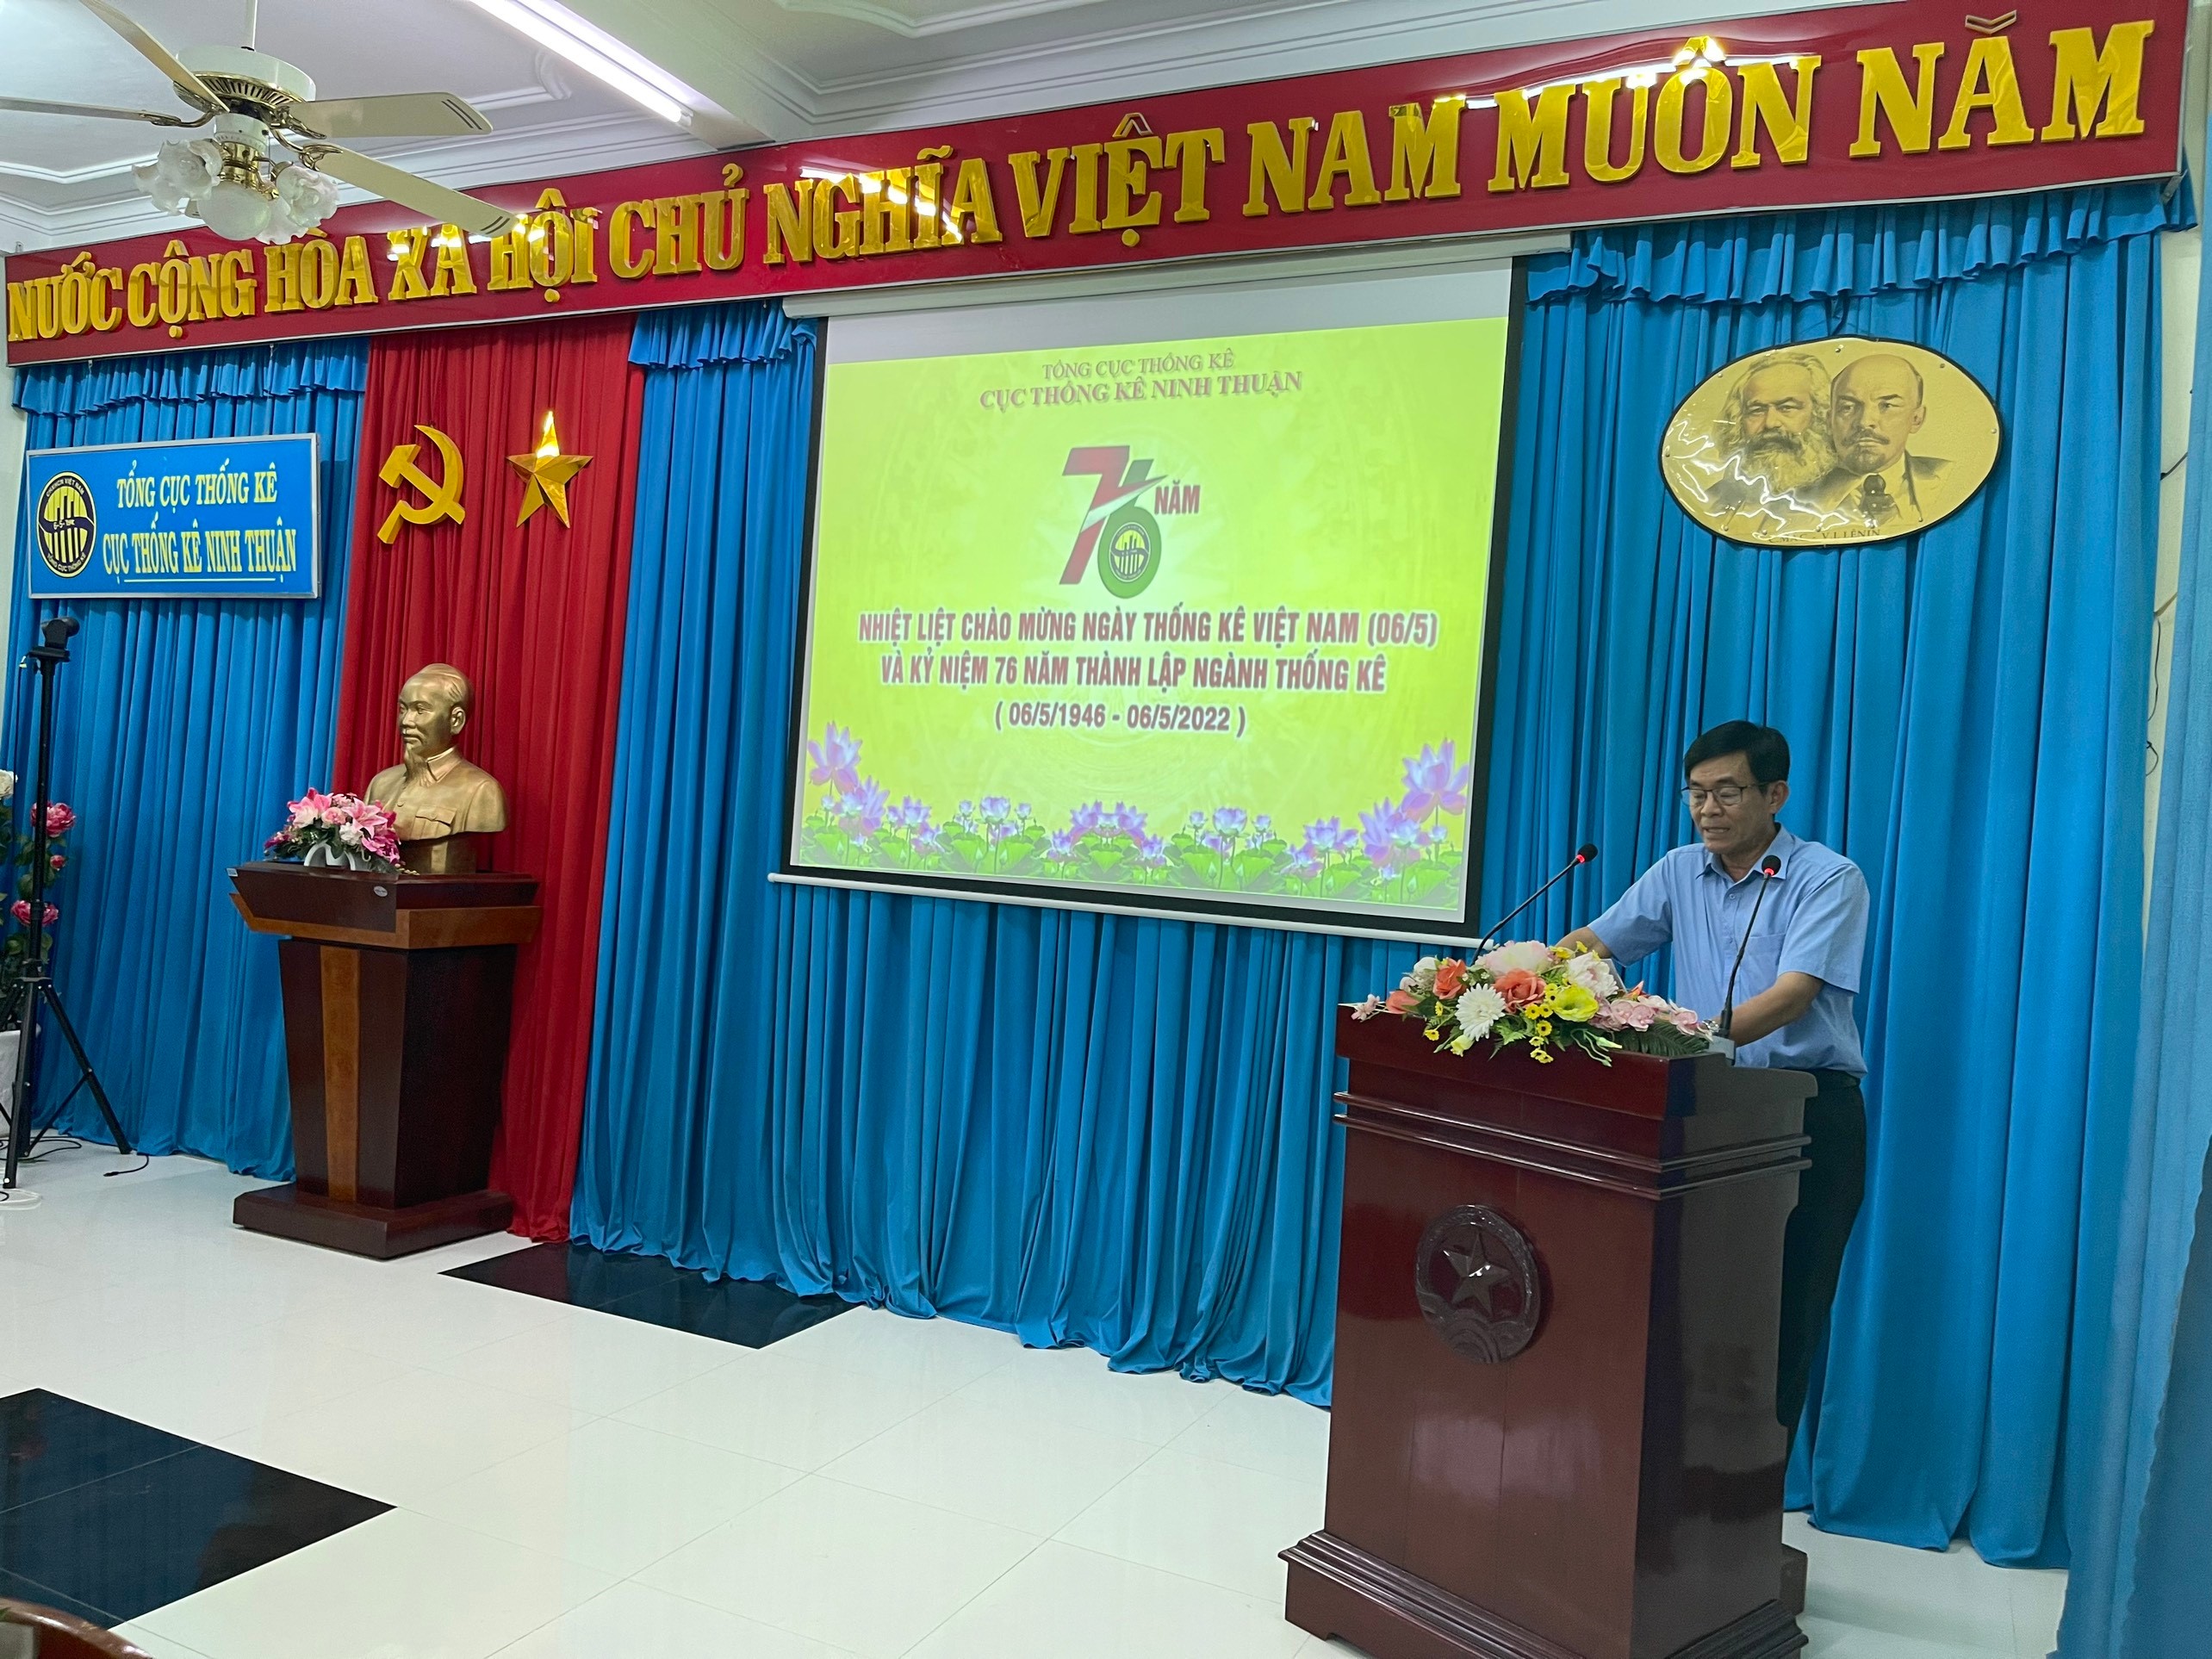 Hội nghị tọa đàm kỷ niệm 76 năm Ngày thành lập ngành Thống kê Việt nam (06/5/1946 – 06/5/2022)